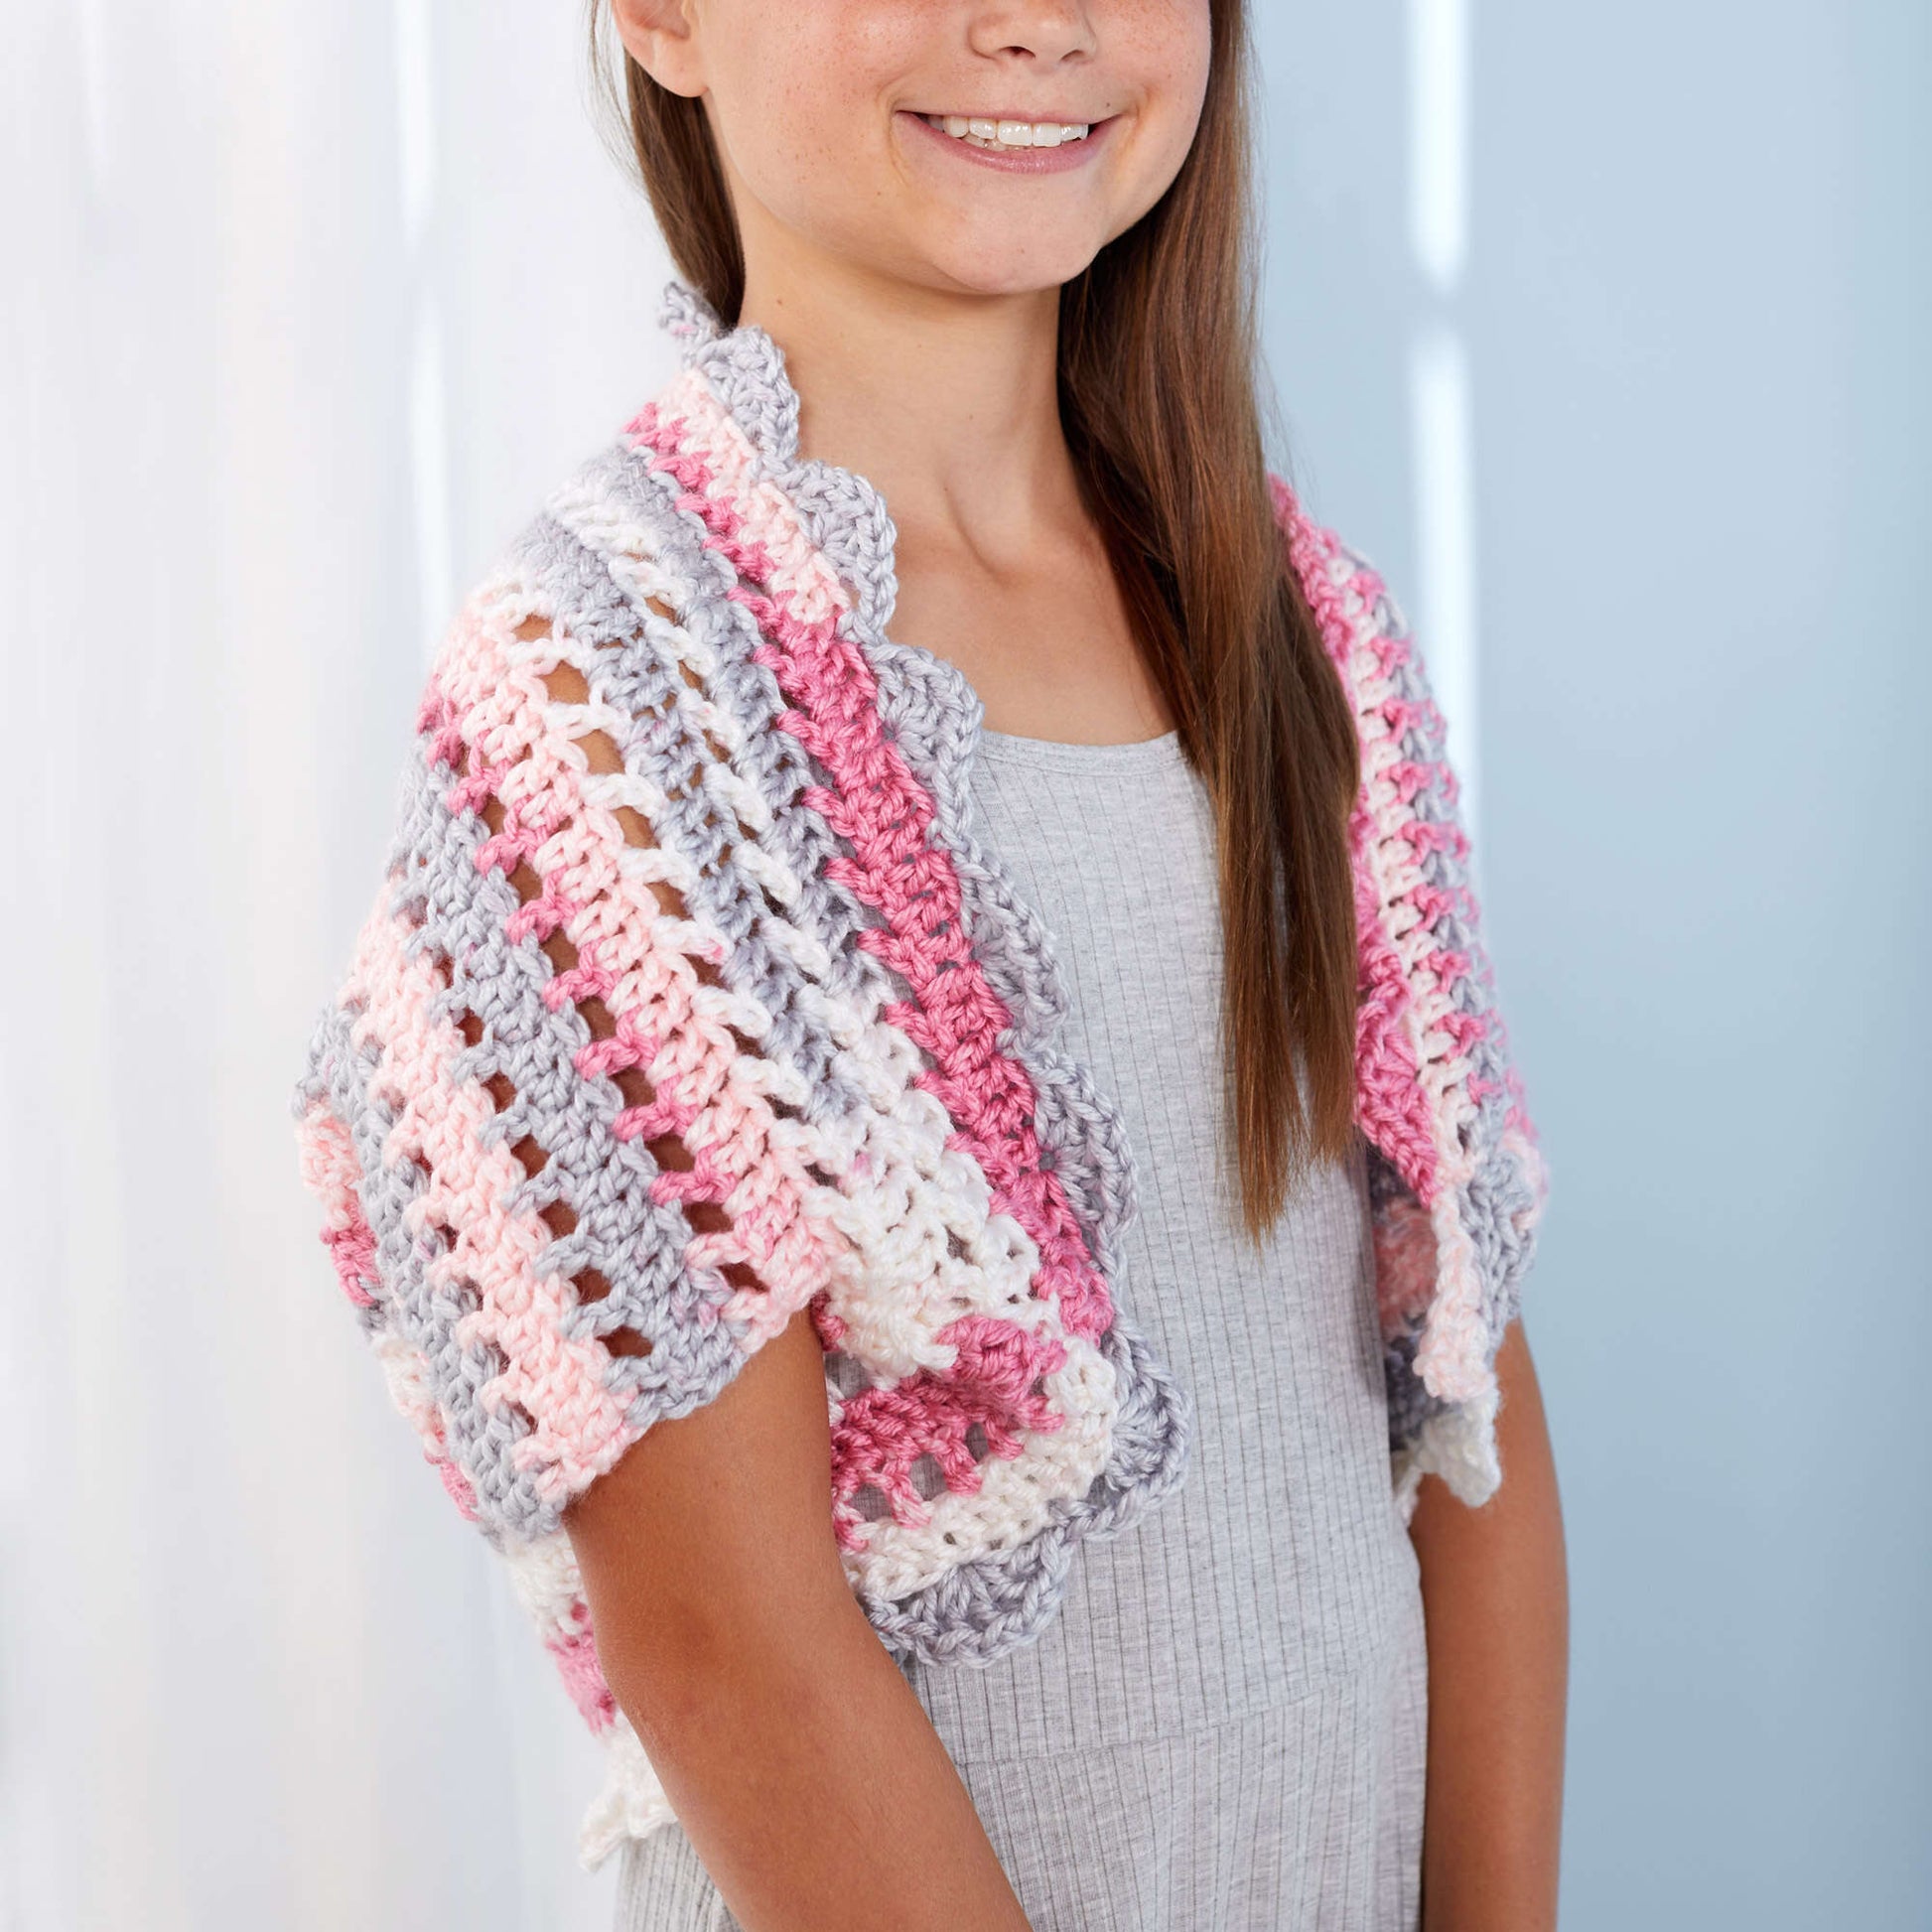 Free Red Heart Crochet Adorable Girl's Shrug Pattern